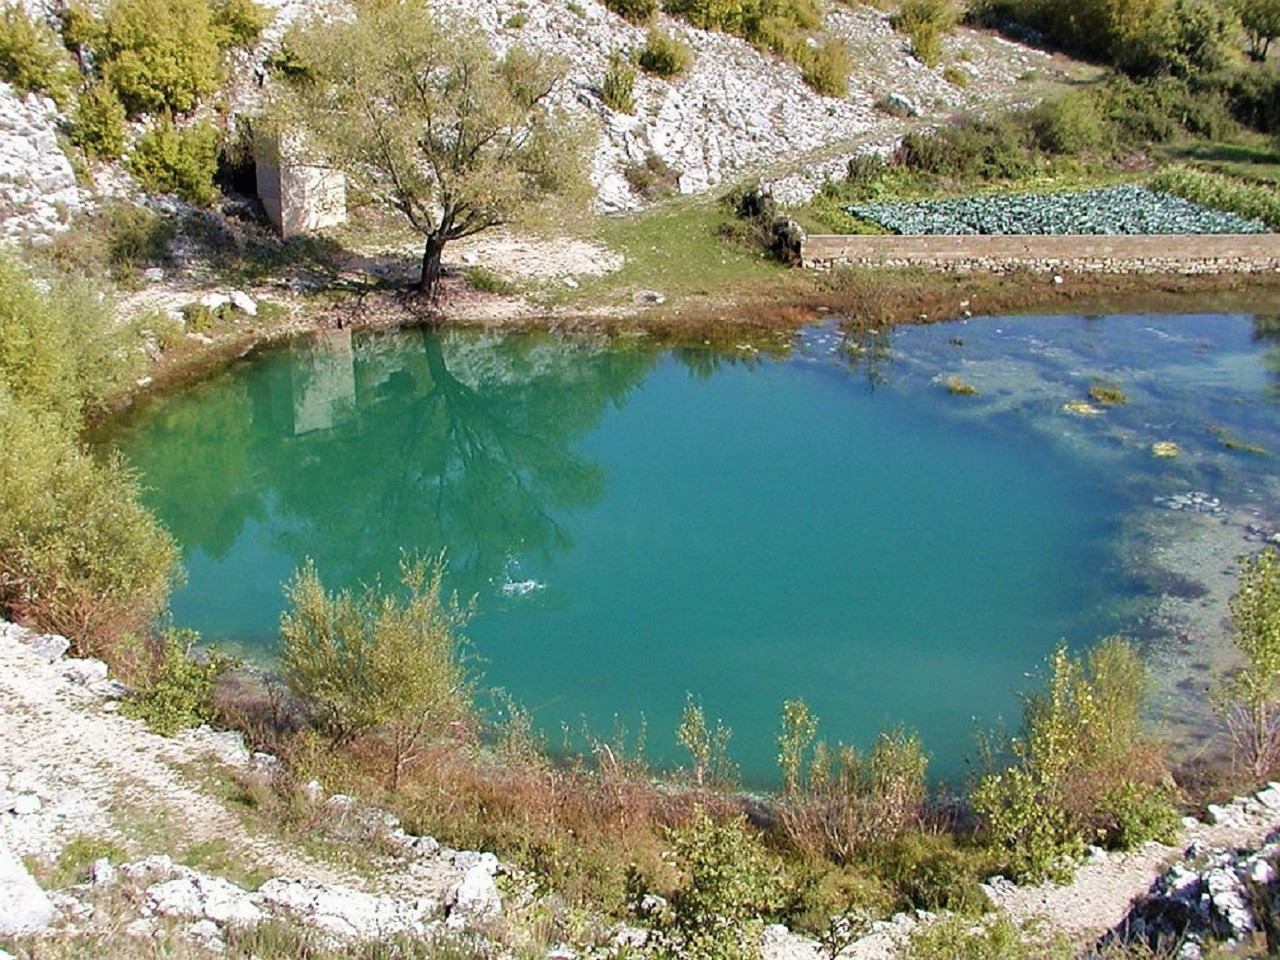 Jezero okruženo kršem Dalmatinske zagore i zelenom vegetacijom.